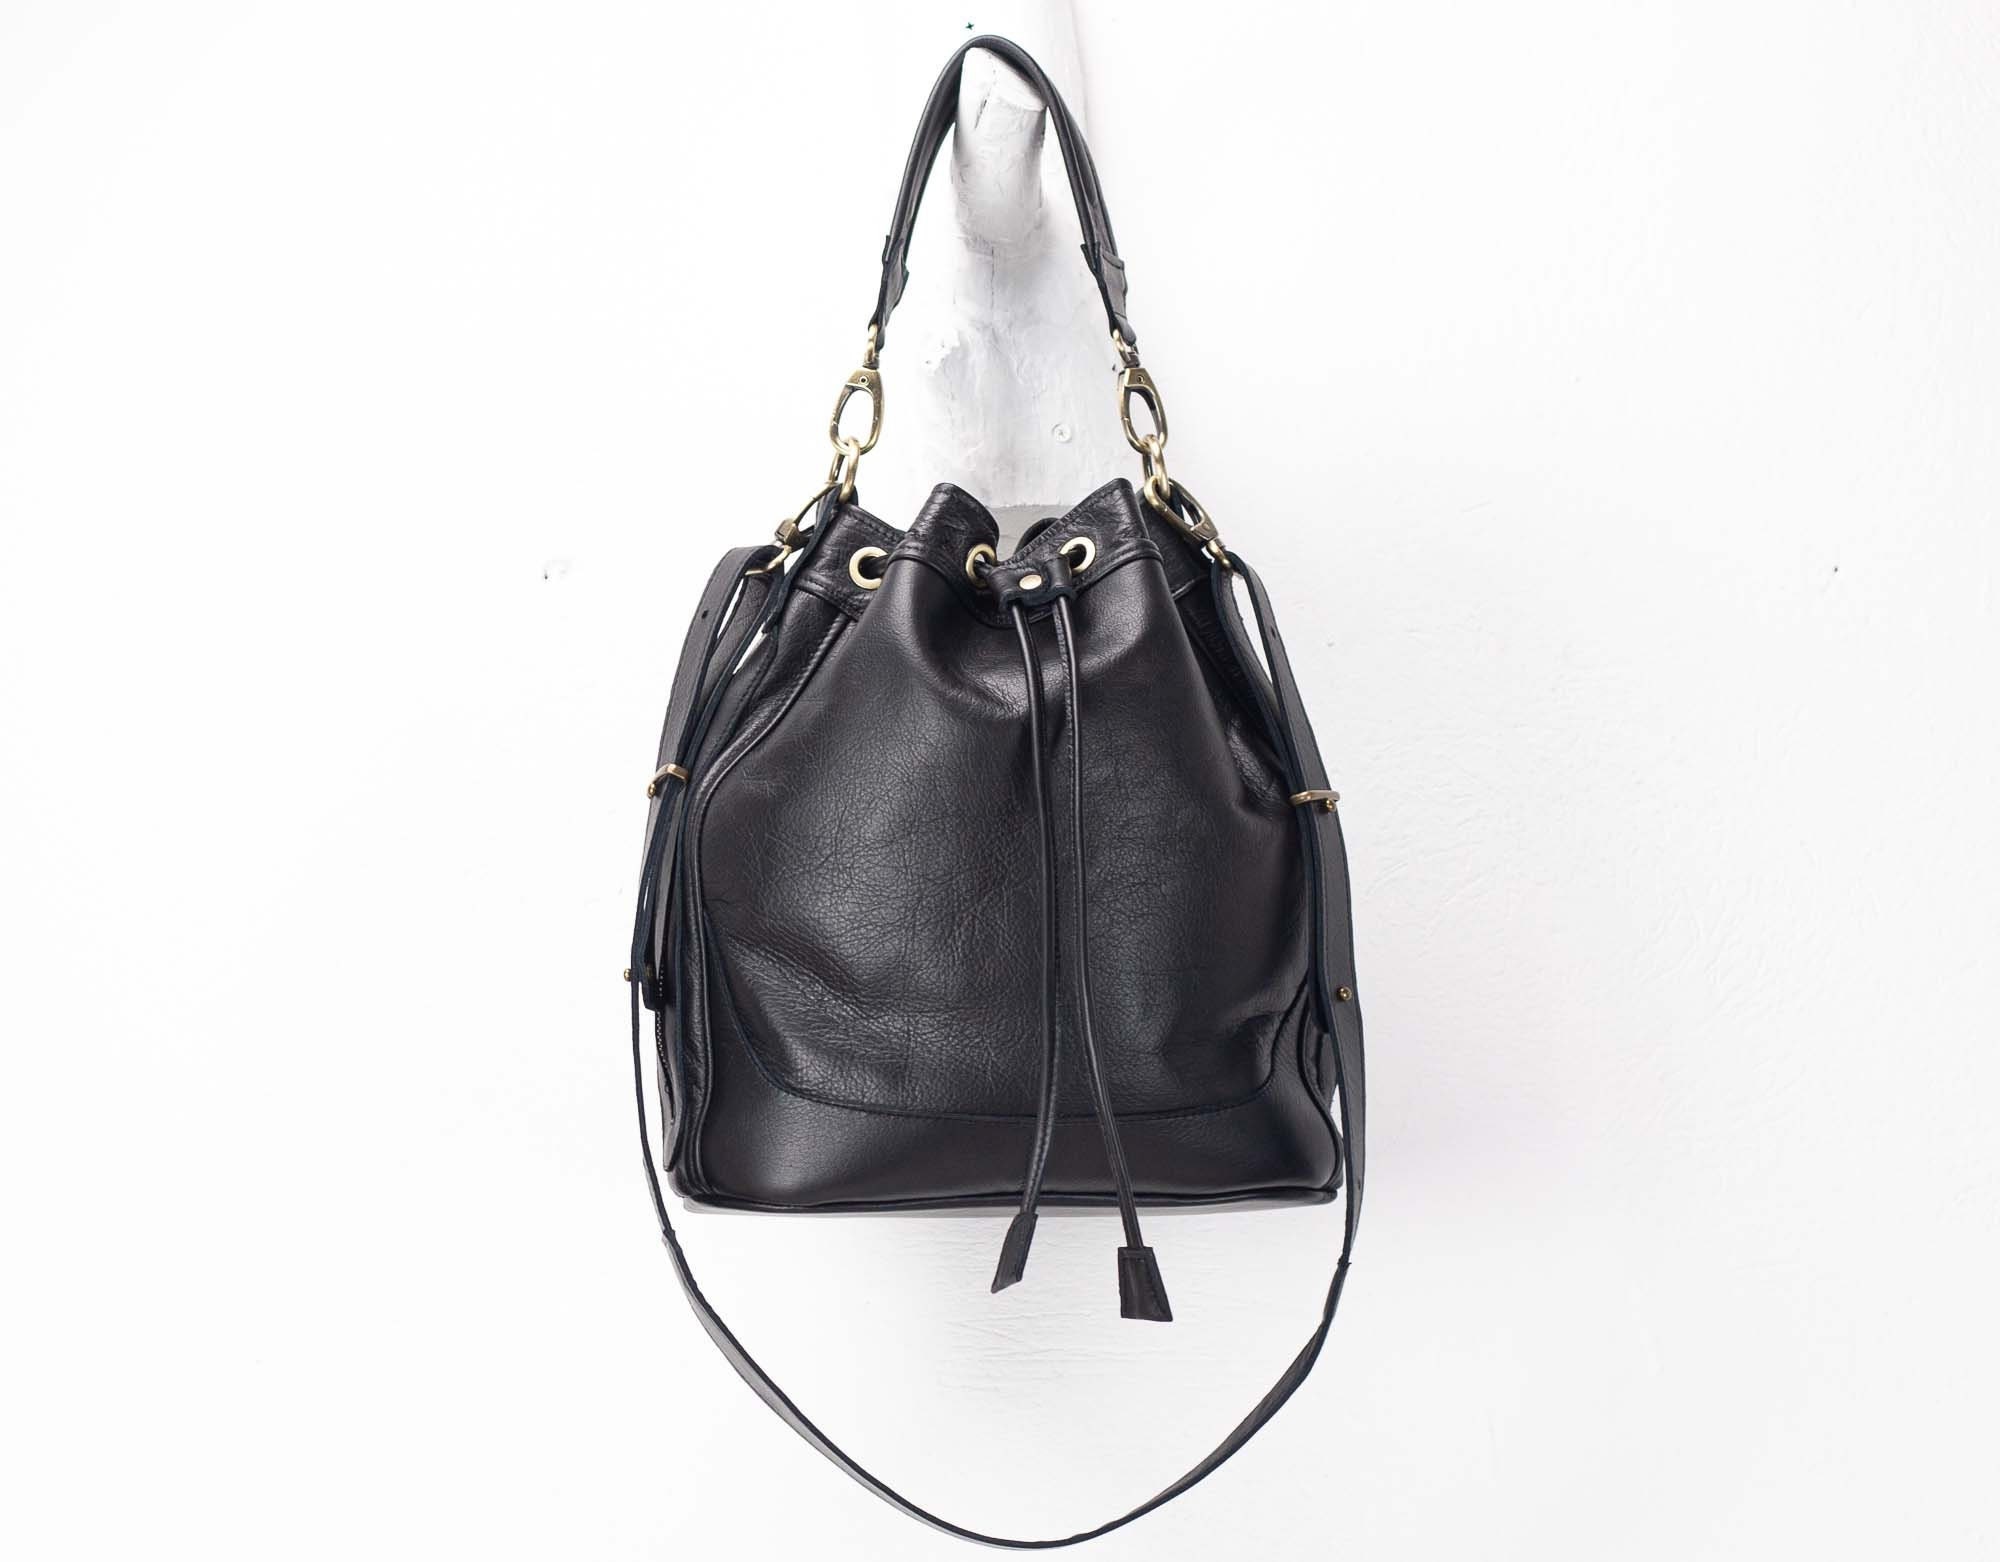 Buy Black Bucket Bag Online In India -  India